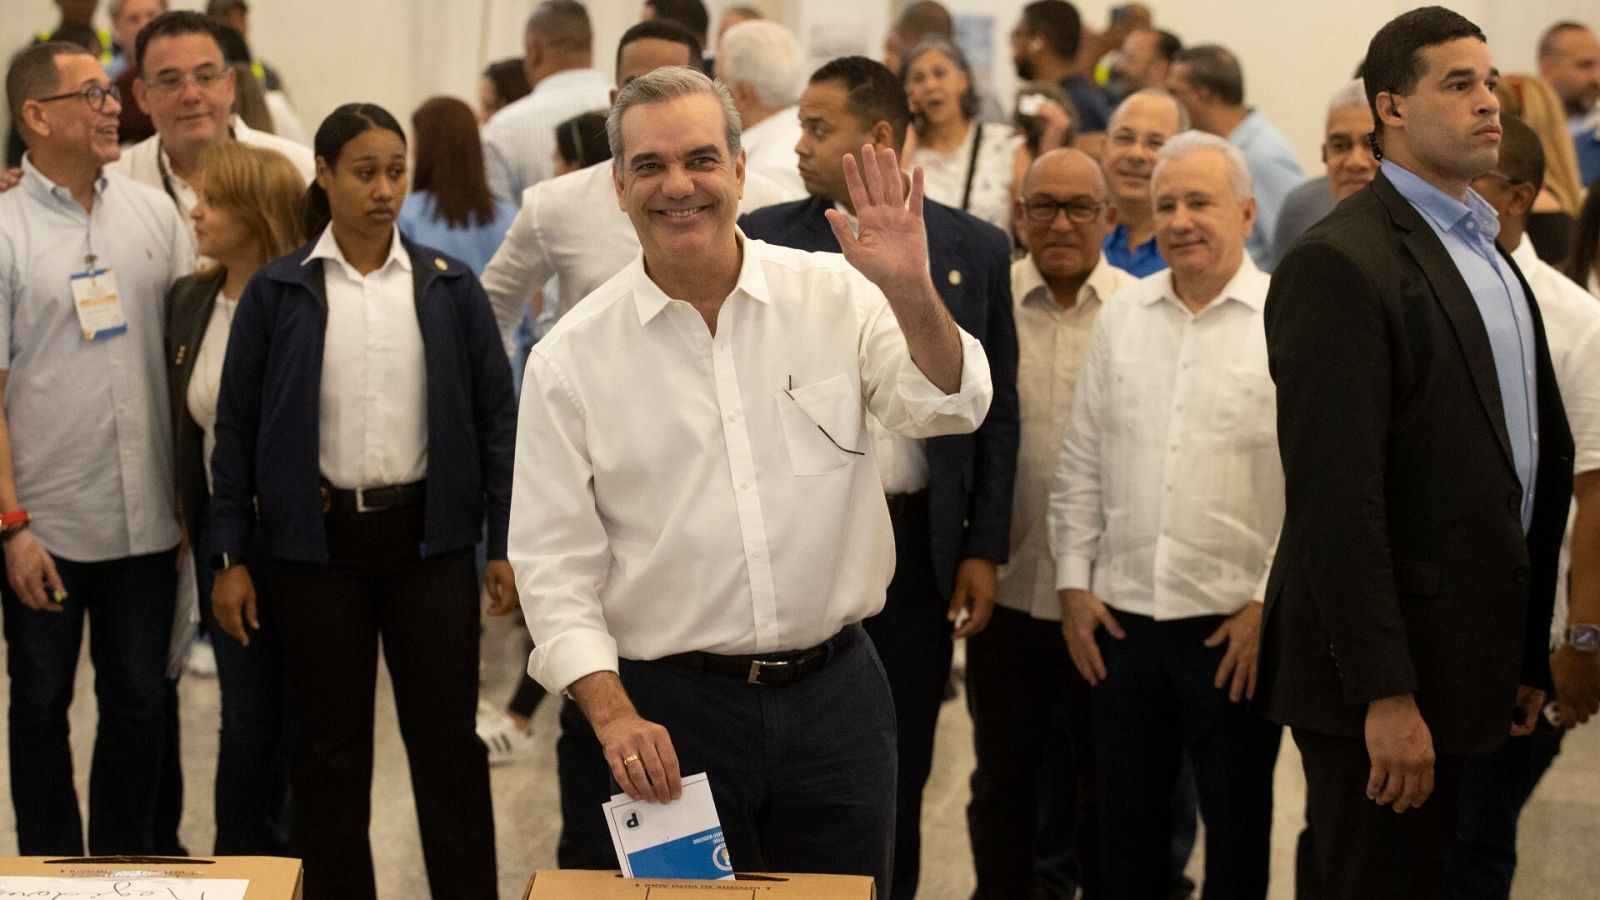 El presidente dominicano Abinader gana las primarias con casi el 91%